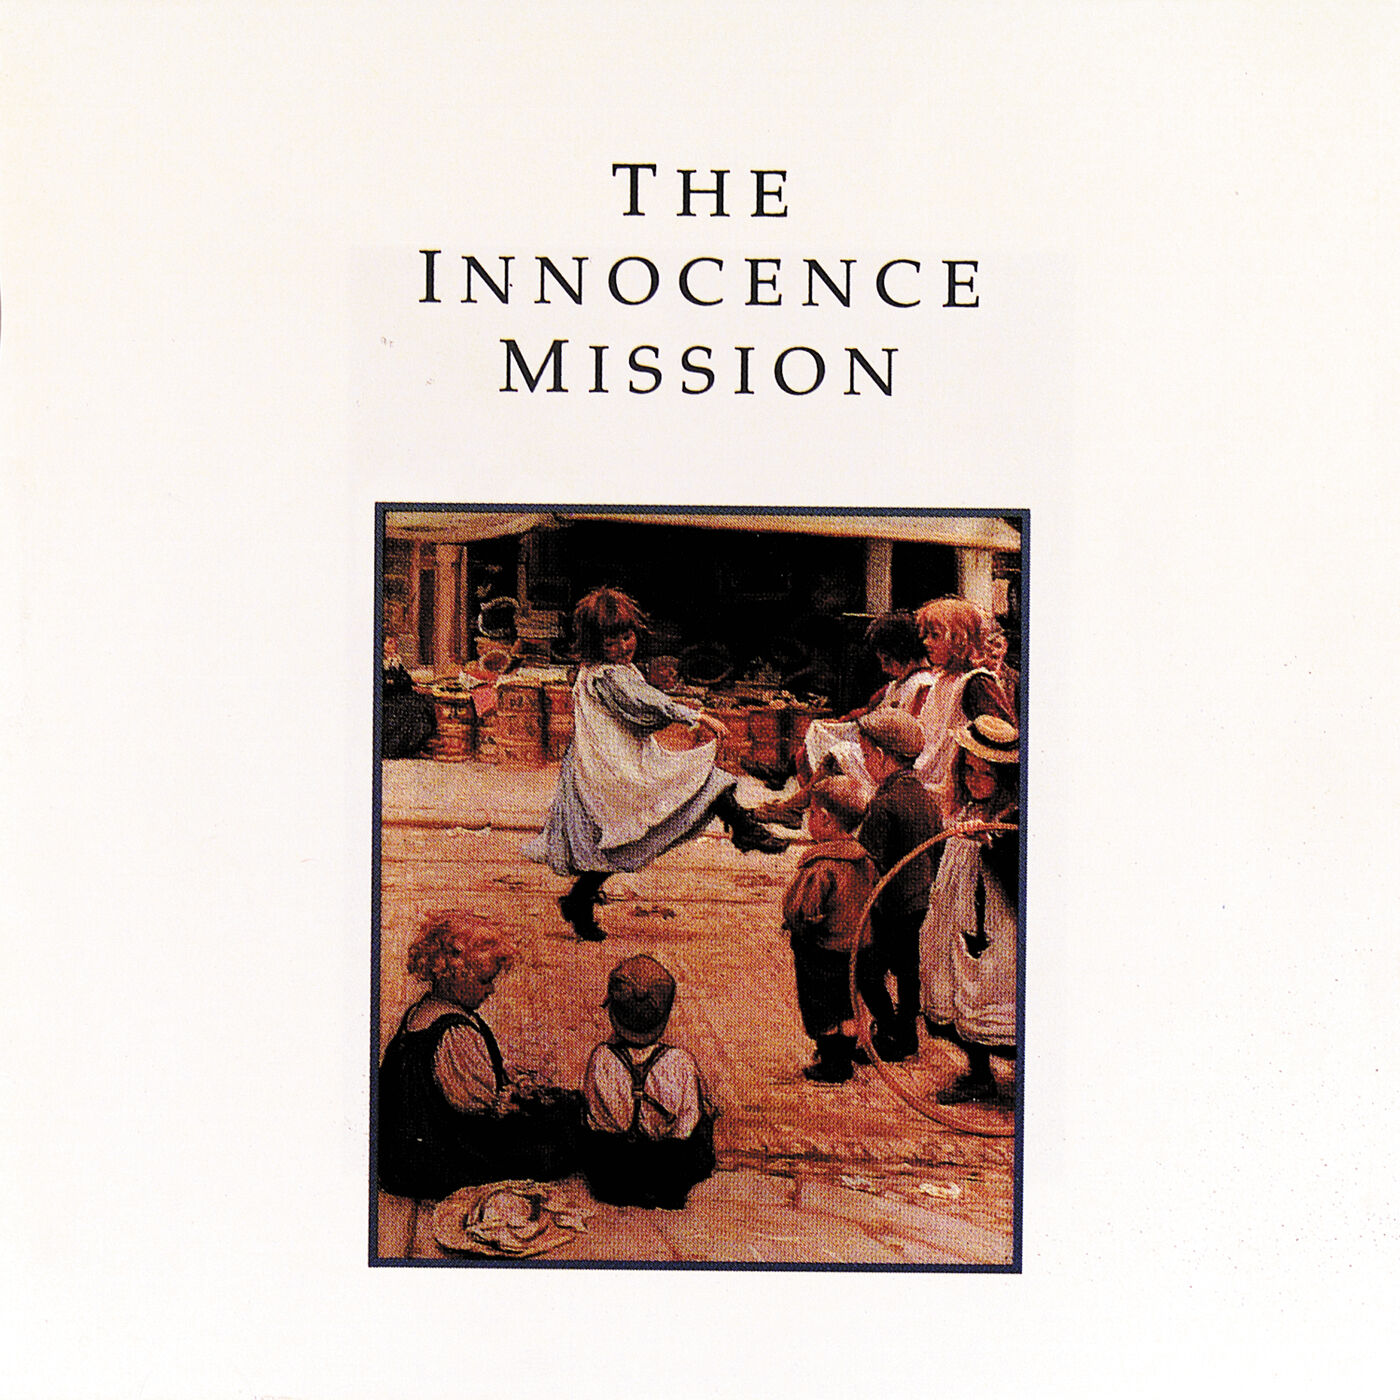 The Innocence Mission - The Innocence Mission (1989)